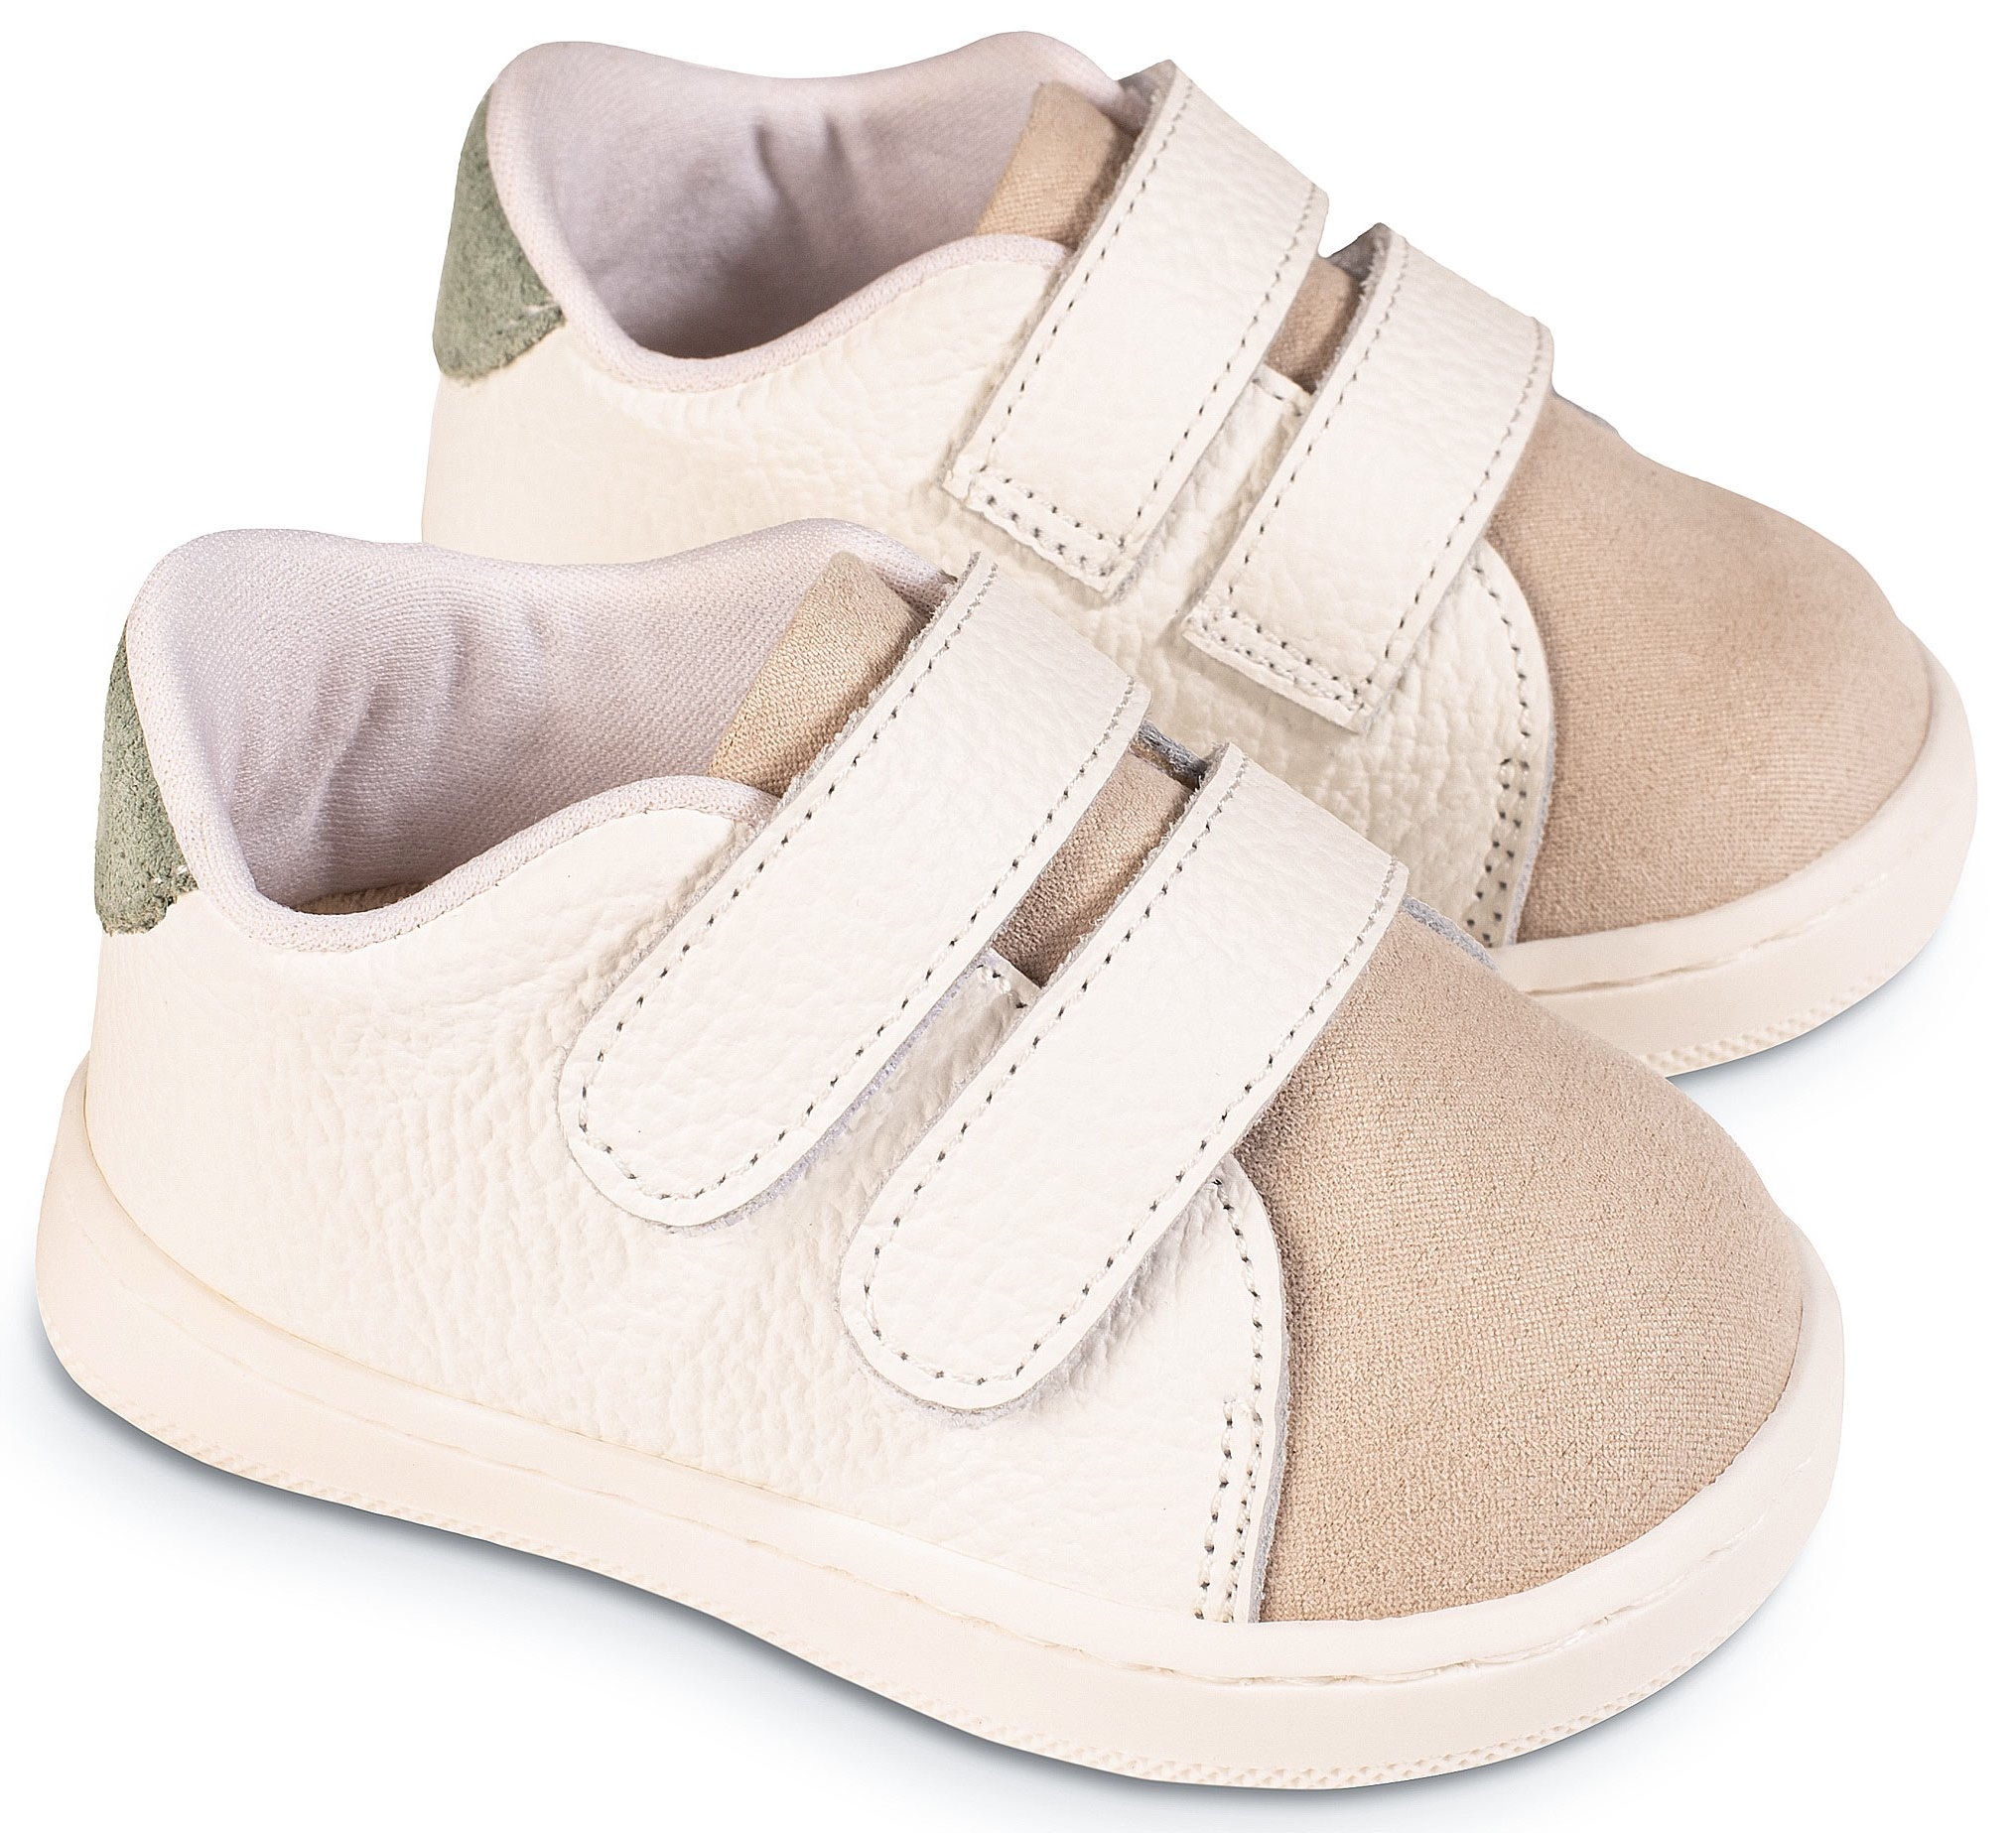 Babywalker Λευκό-Μπεζ-Μέντα Σκρατς - Βαπτιστικά παπούτσια για αγόρι